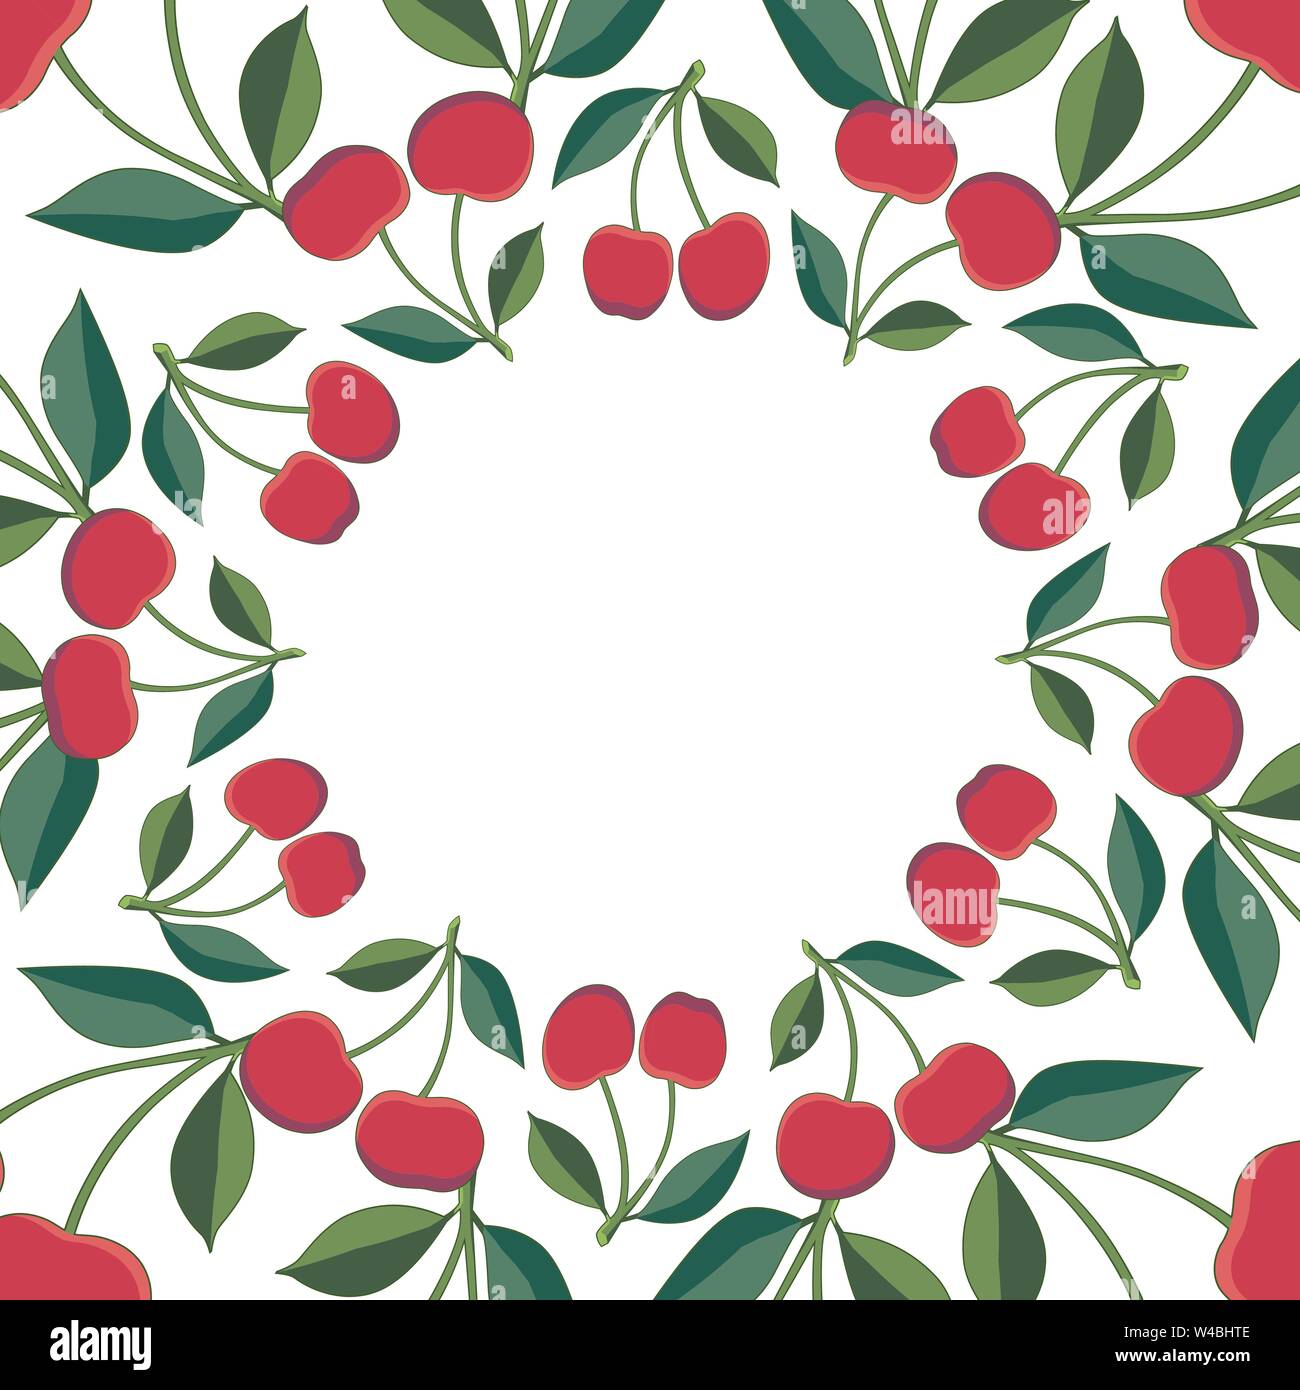 Positive floral Rahmen mit roten Kirschen und grünen Blättern. Für ihr Design Vorlage, Grußkarten, festliche Ankündigungen, Poster, Menü. Dekoration Stock Vektor